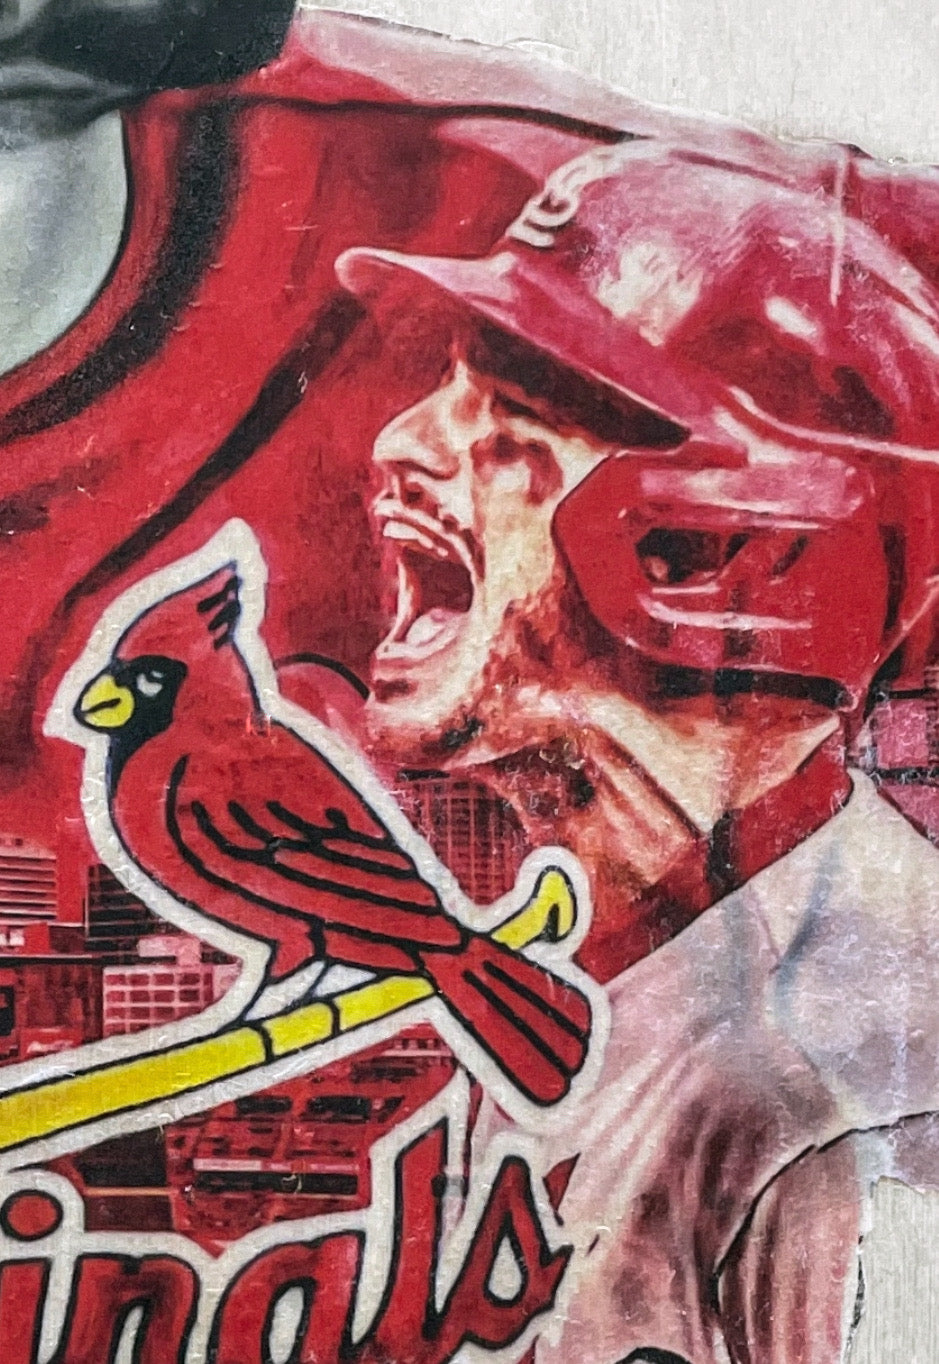 St Louis Cardinals - Great design and artwork. #NerdMentor